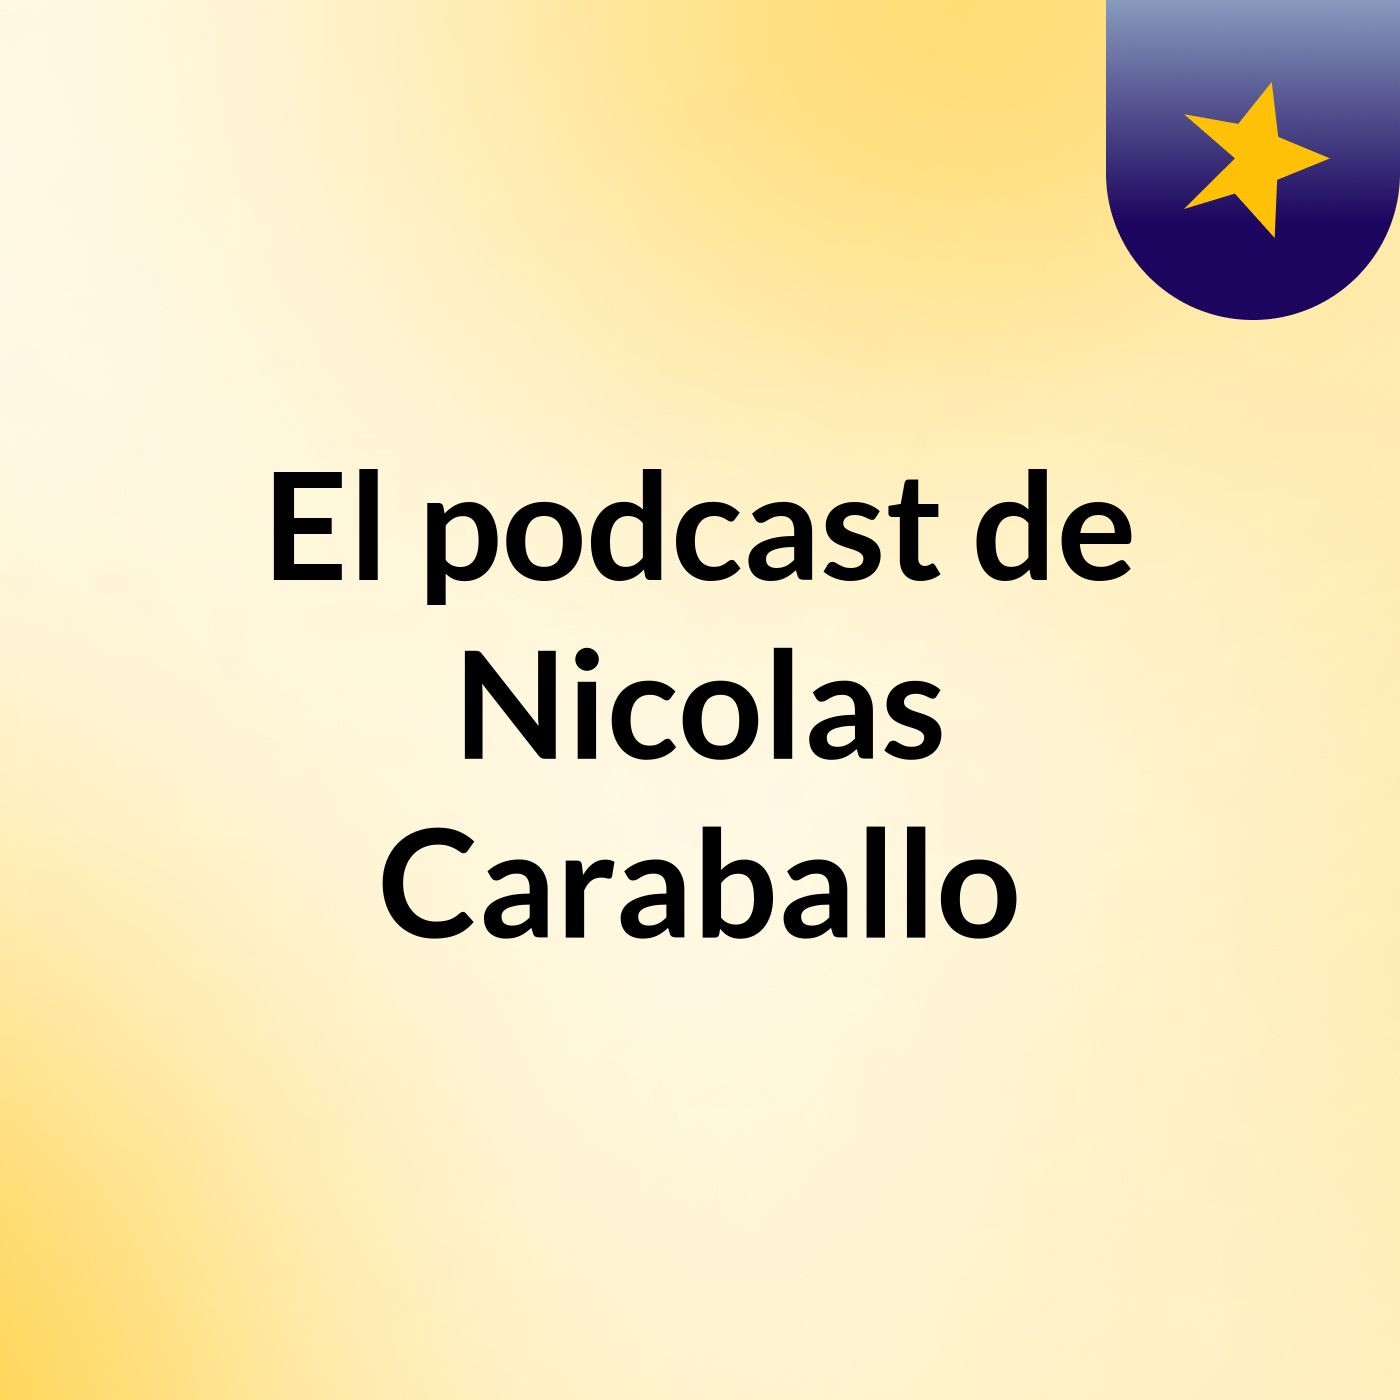 Episodio 46 - El podcast de Nicolas Caraballo